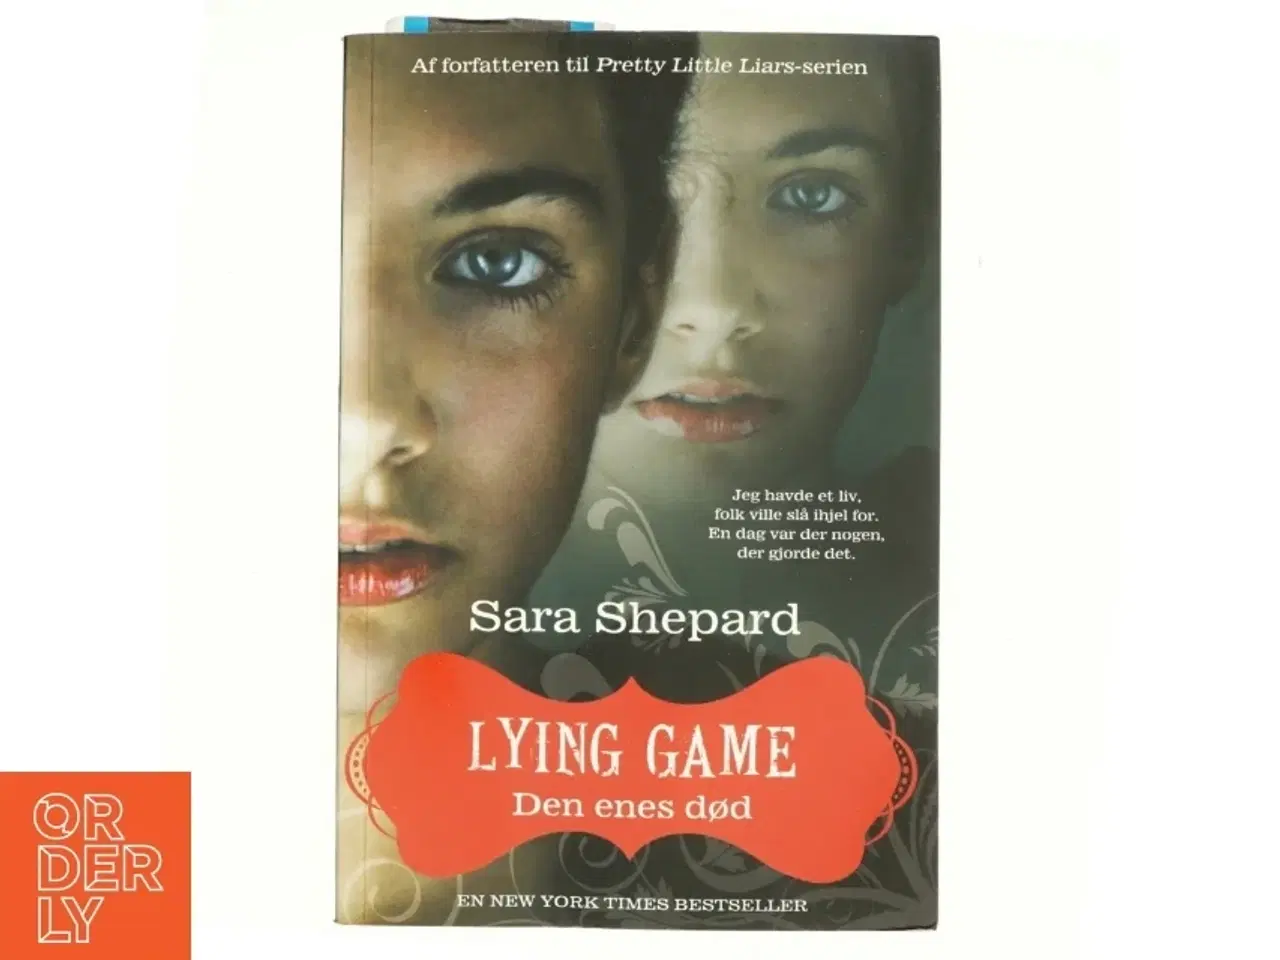 Billede 1 - Lying game, Den enes død af Sara Shepard (Bog)